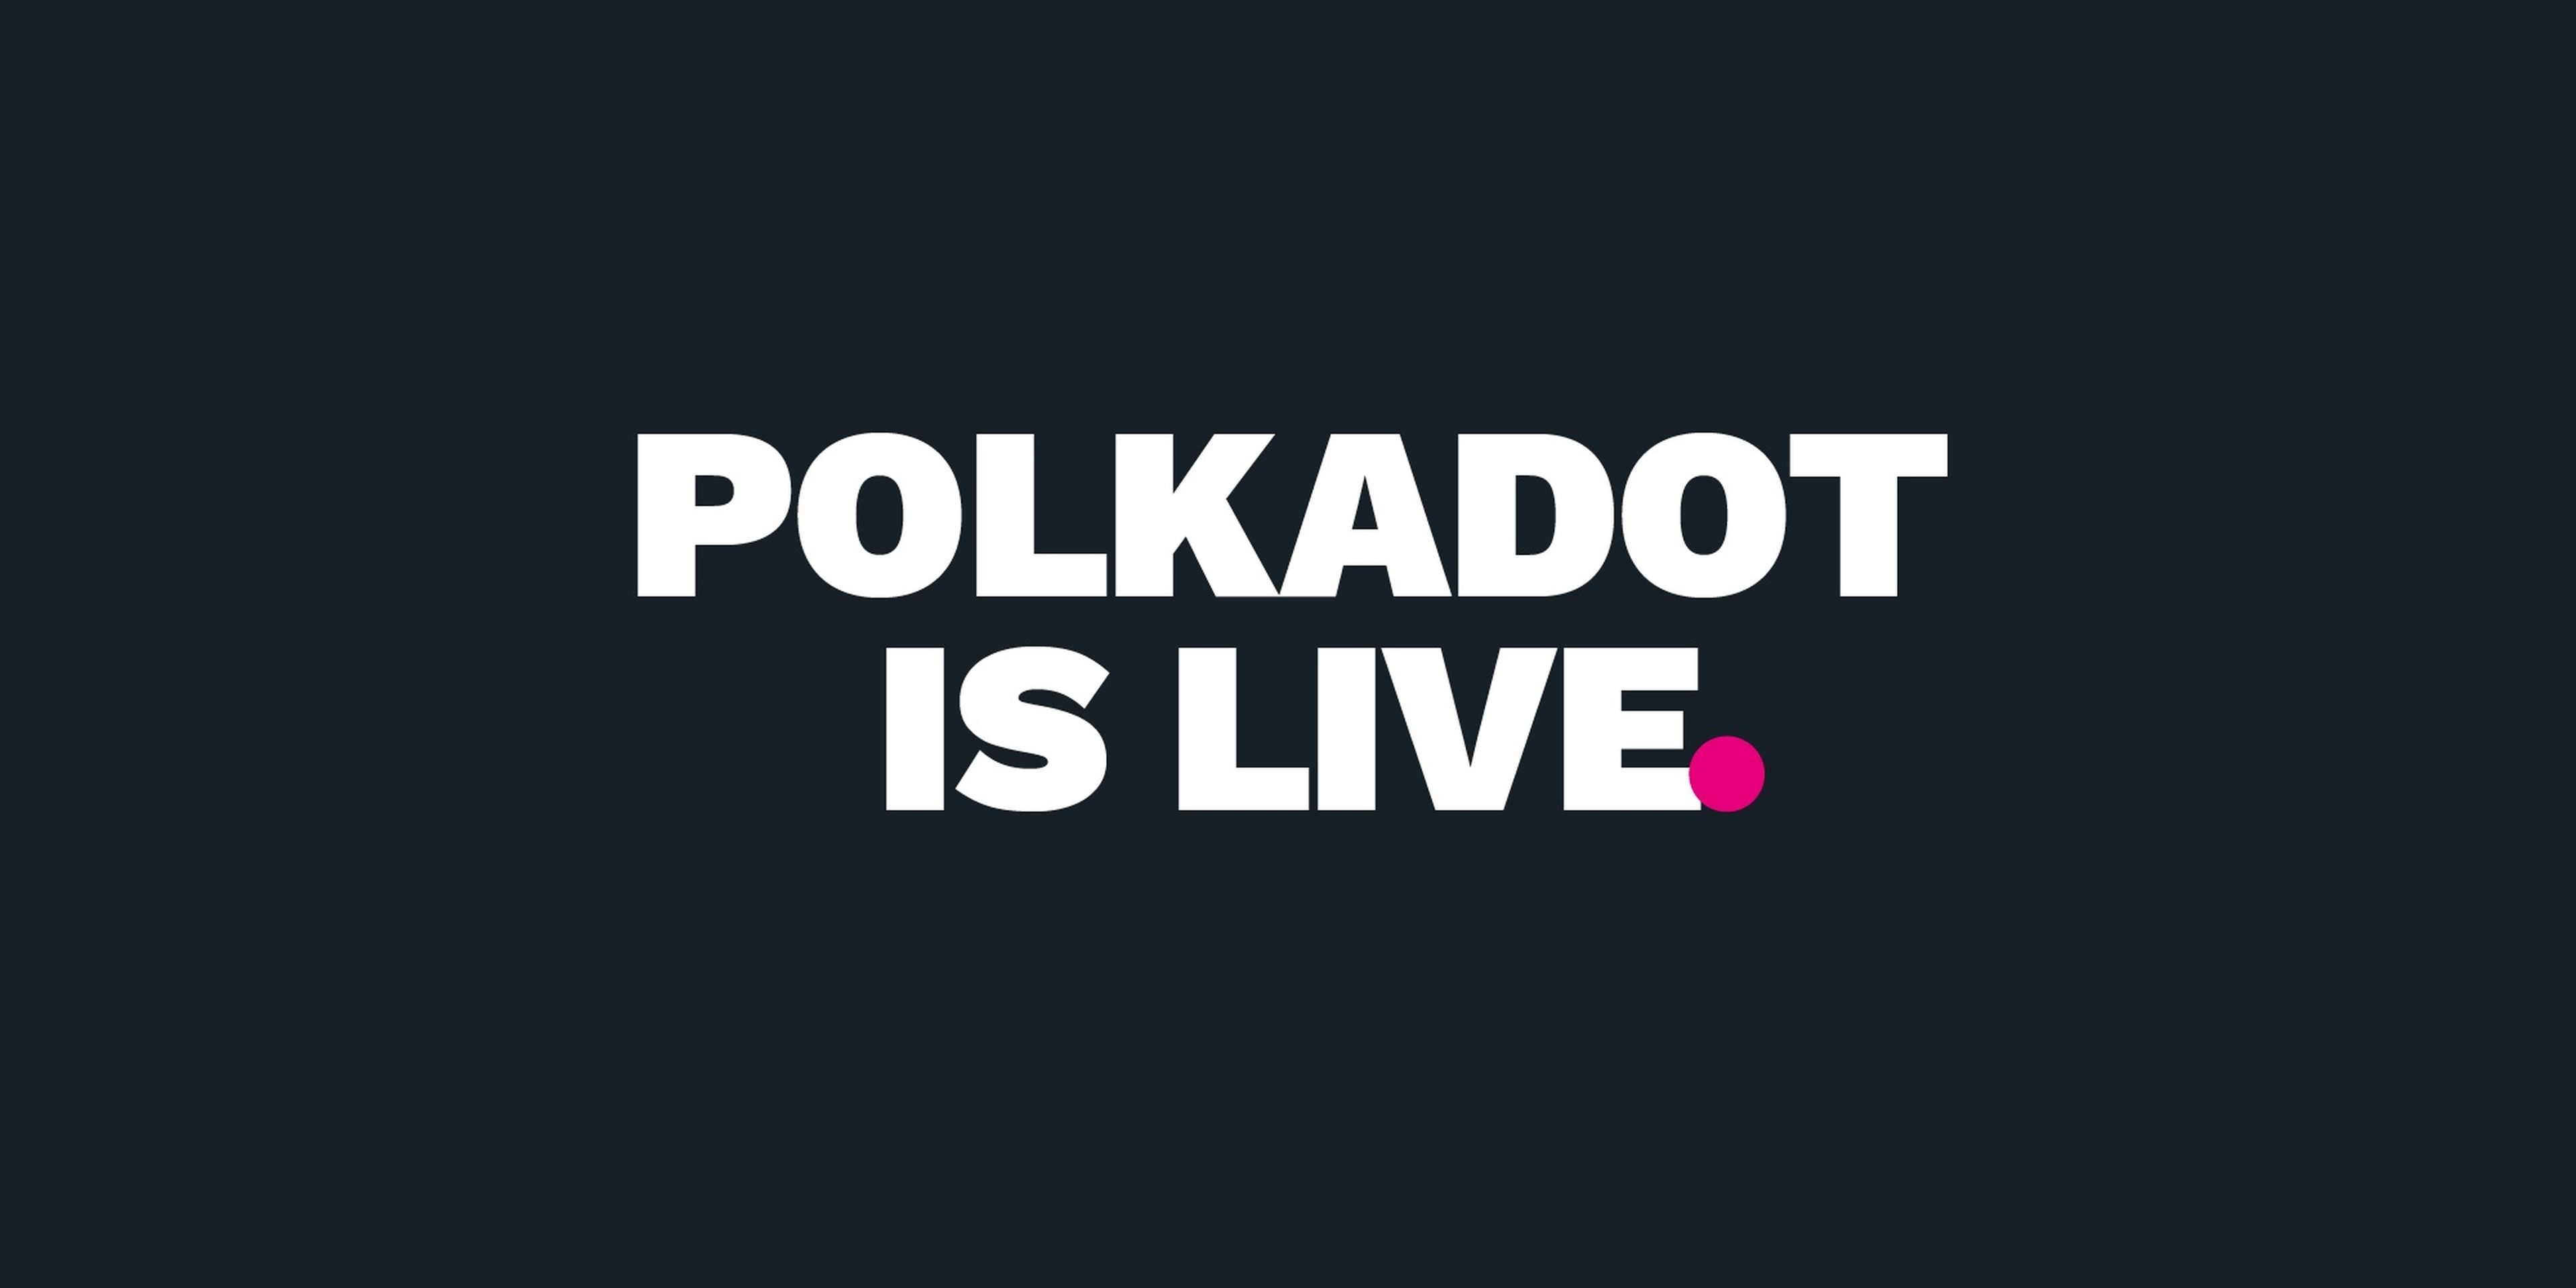 Imagen de la noticia de la web de Polkadot en la que anunciaban su lanzamiento. 